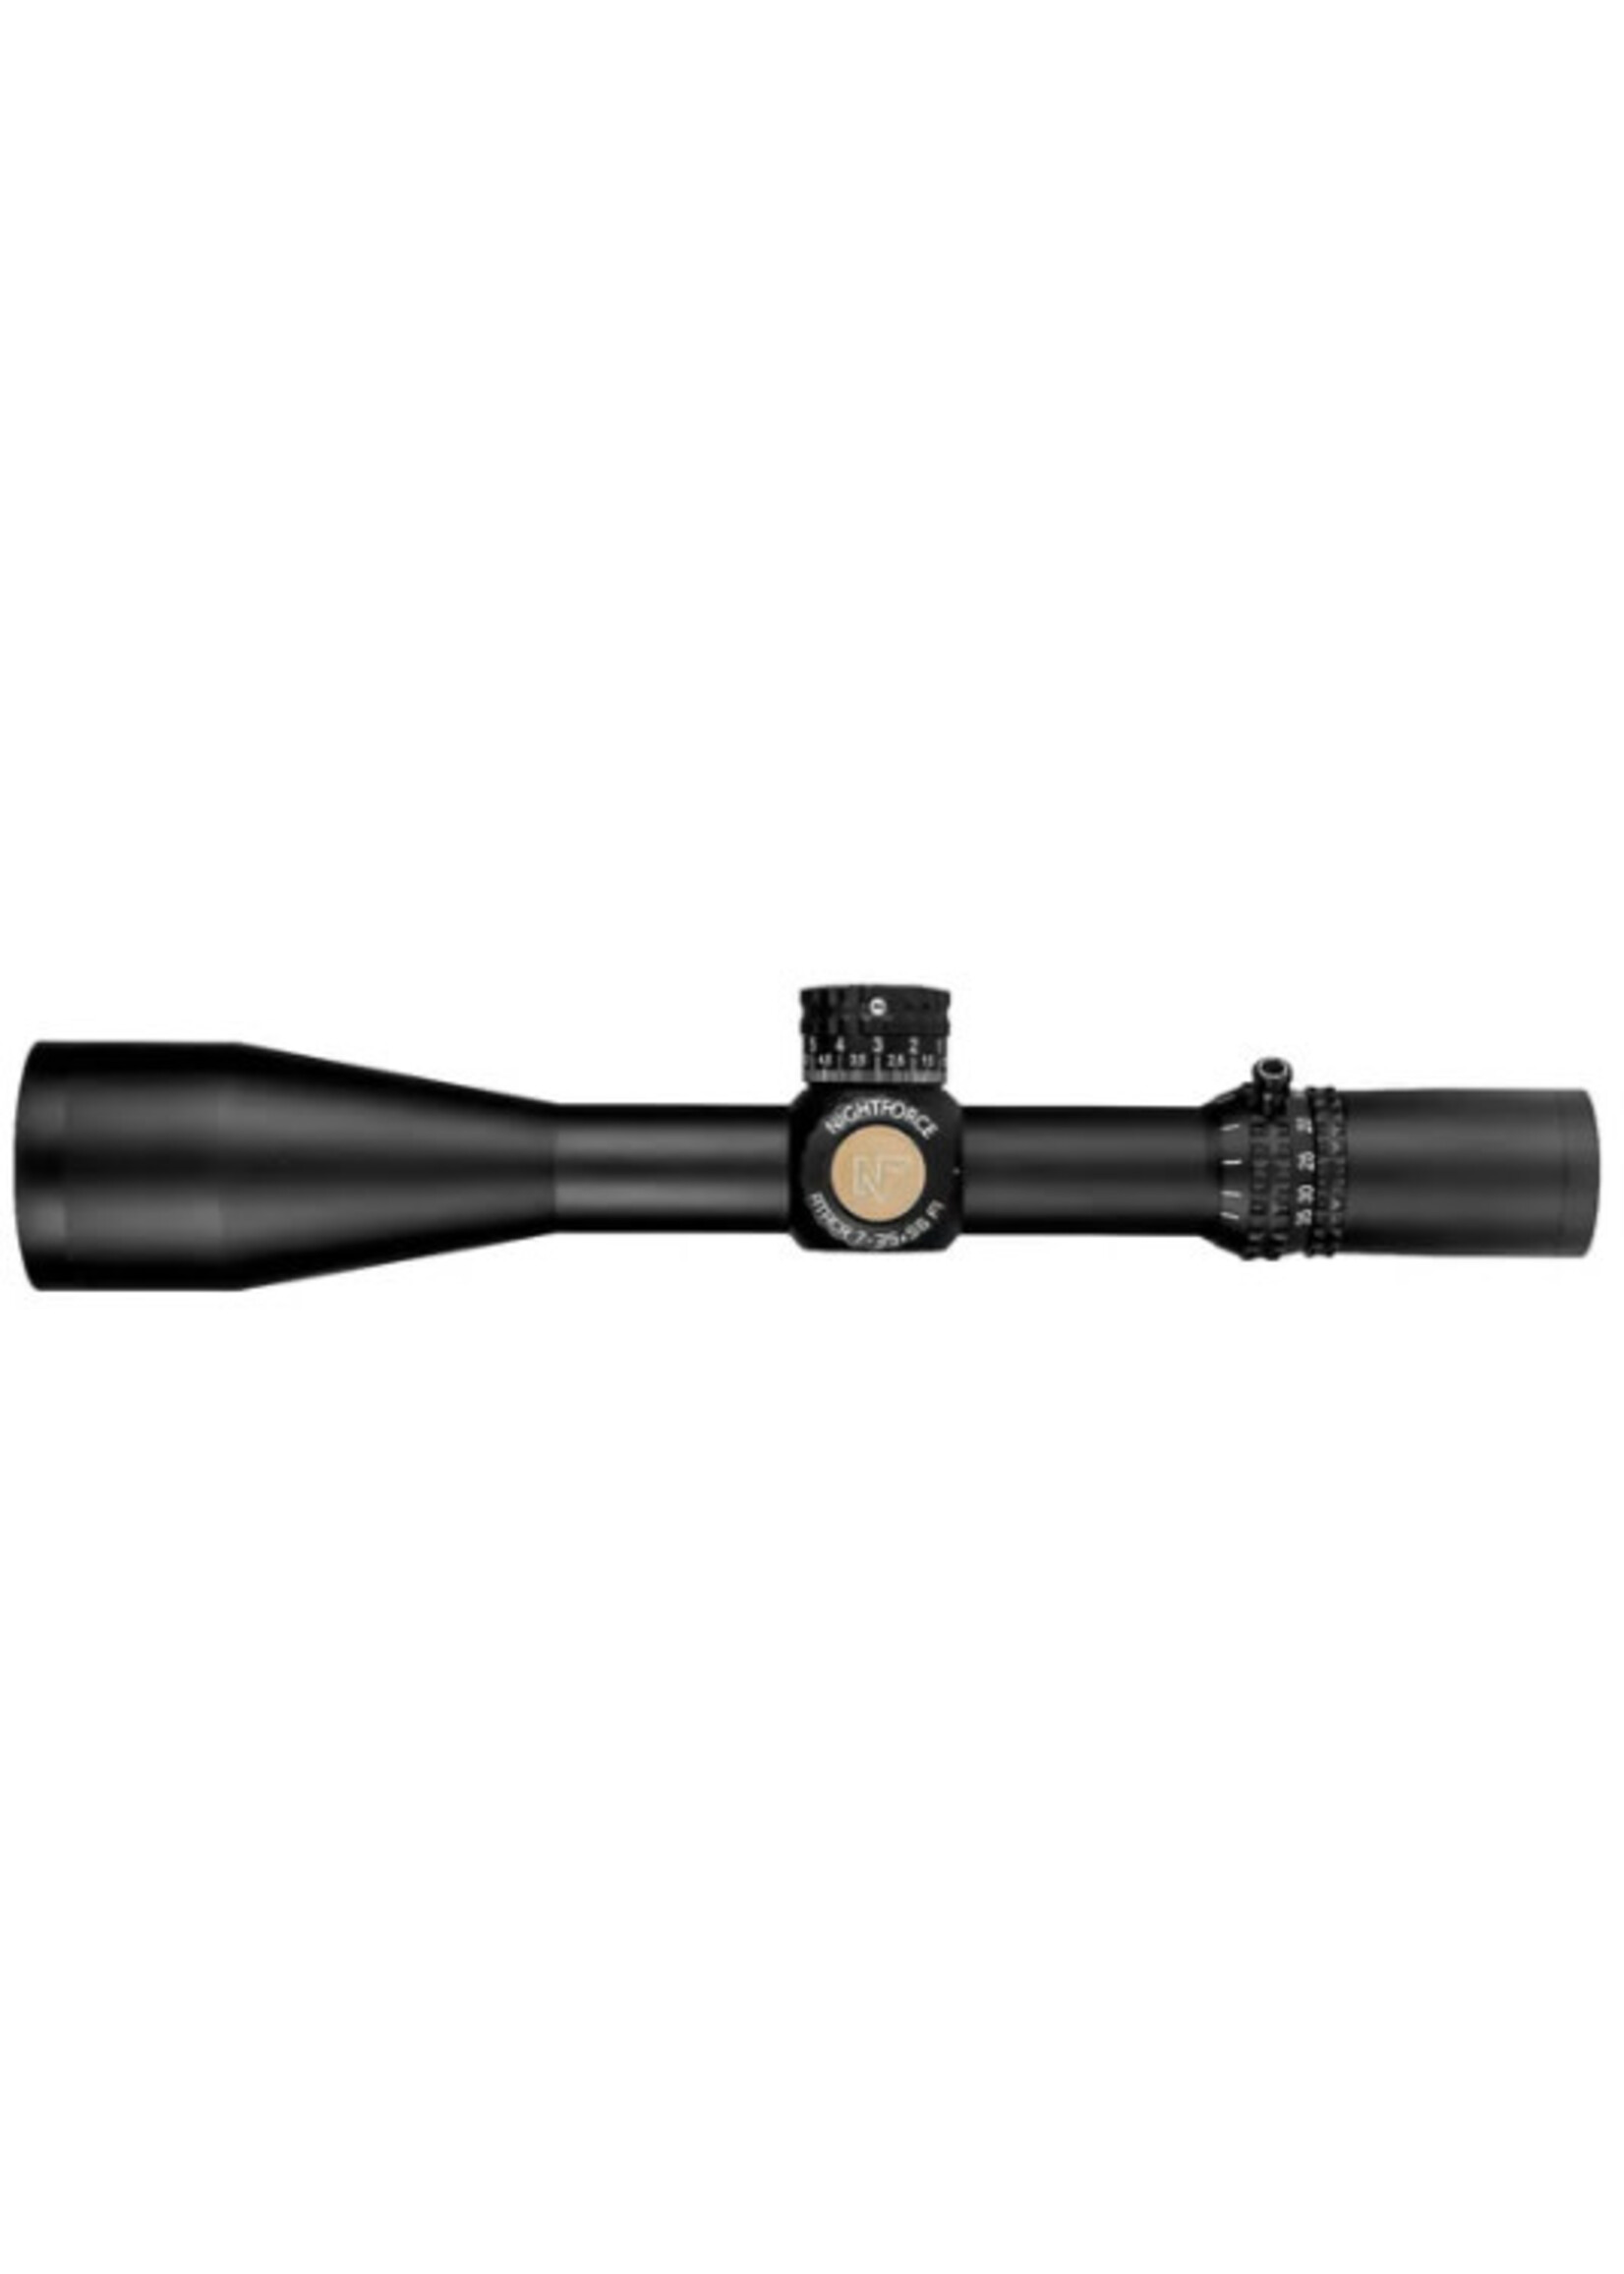 Nightforce Nightforce ATACR 7-35x56mm F1 ZeroStop .1 MRAD Illum PTL TReMoR5 Riflescope C692